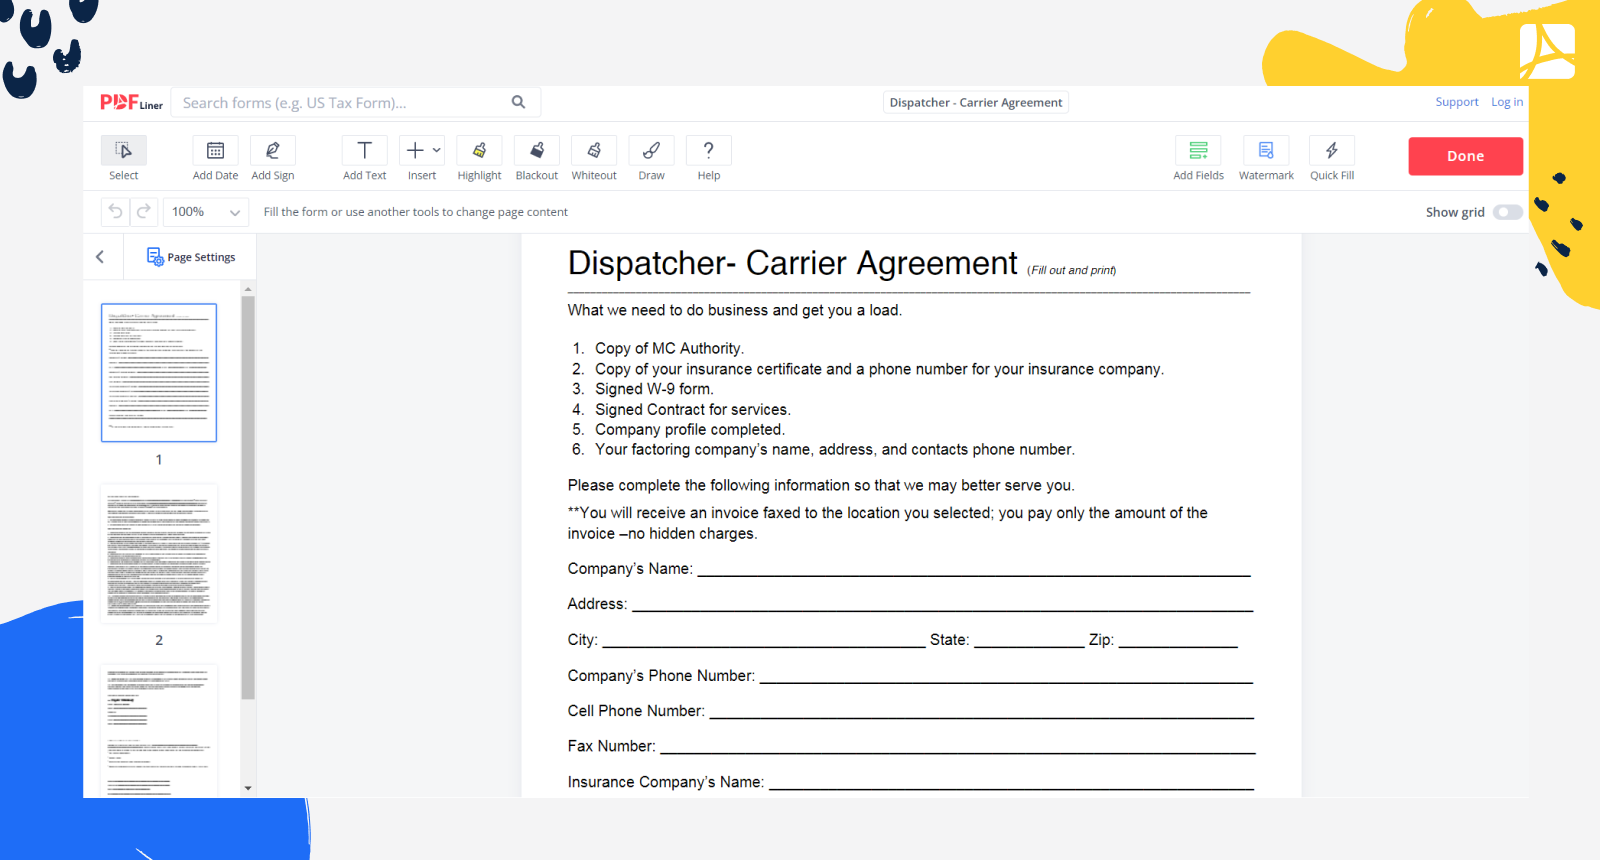 Dispatcher - Carrier Agreement Form Screenshot